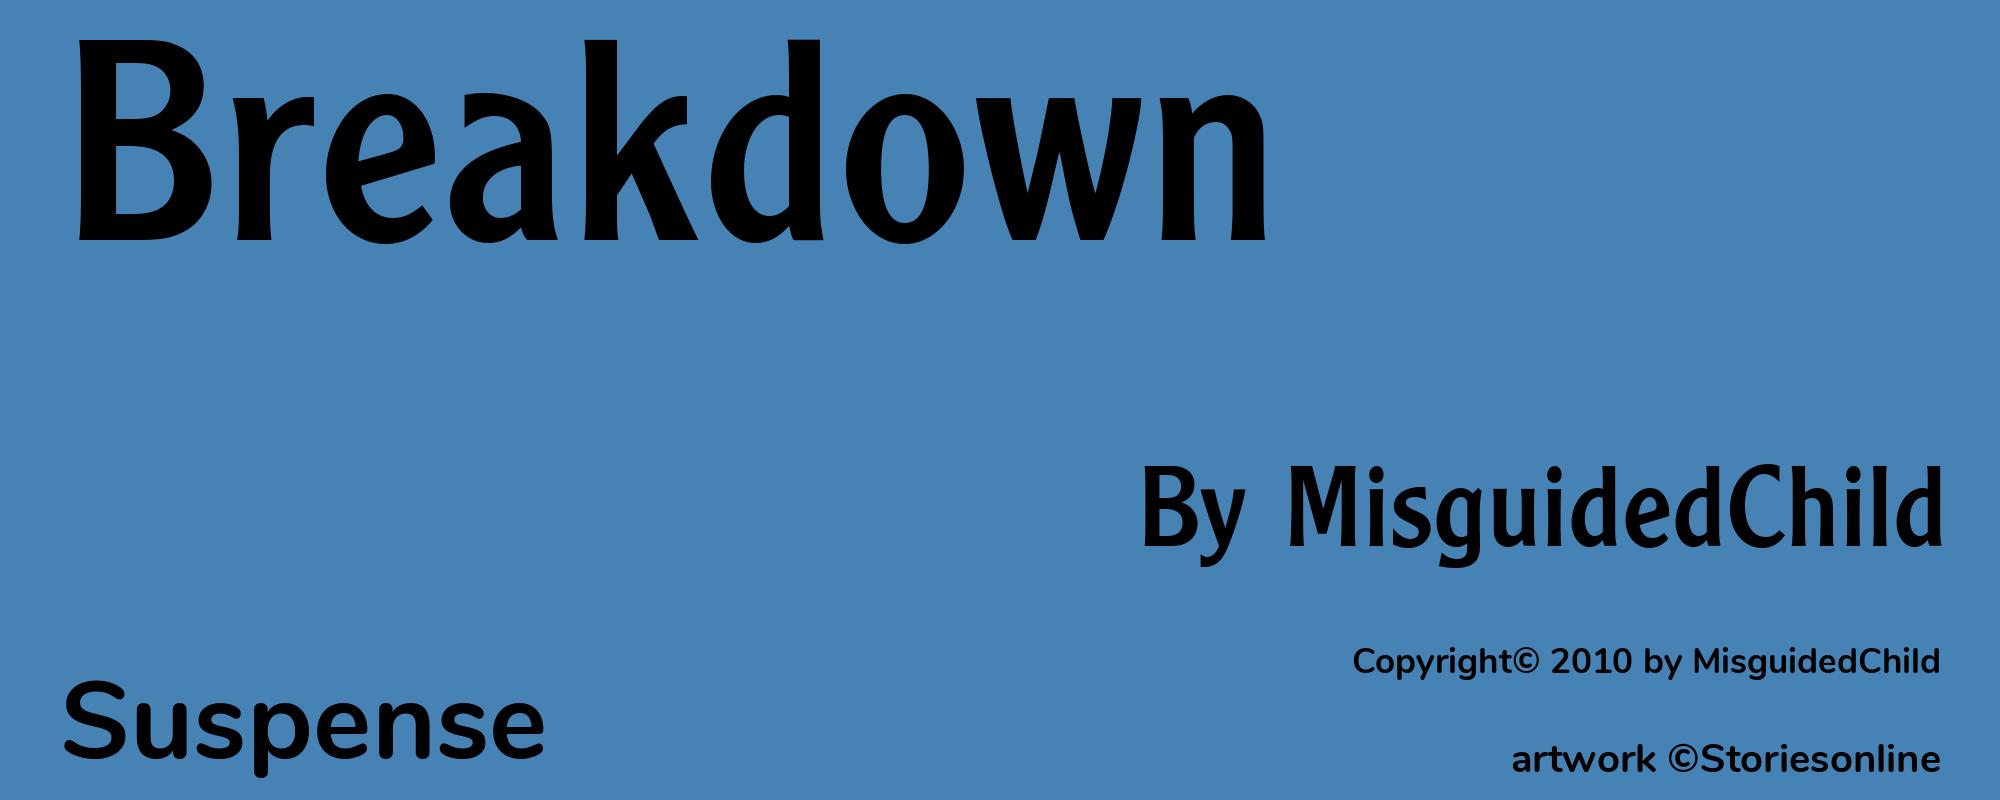 Breakdown - Cover